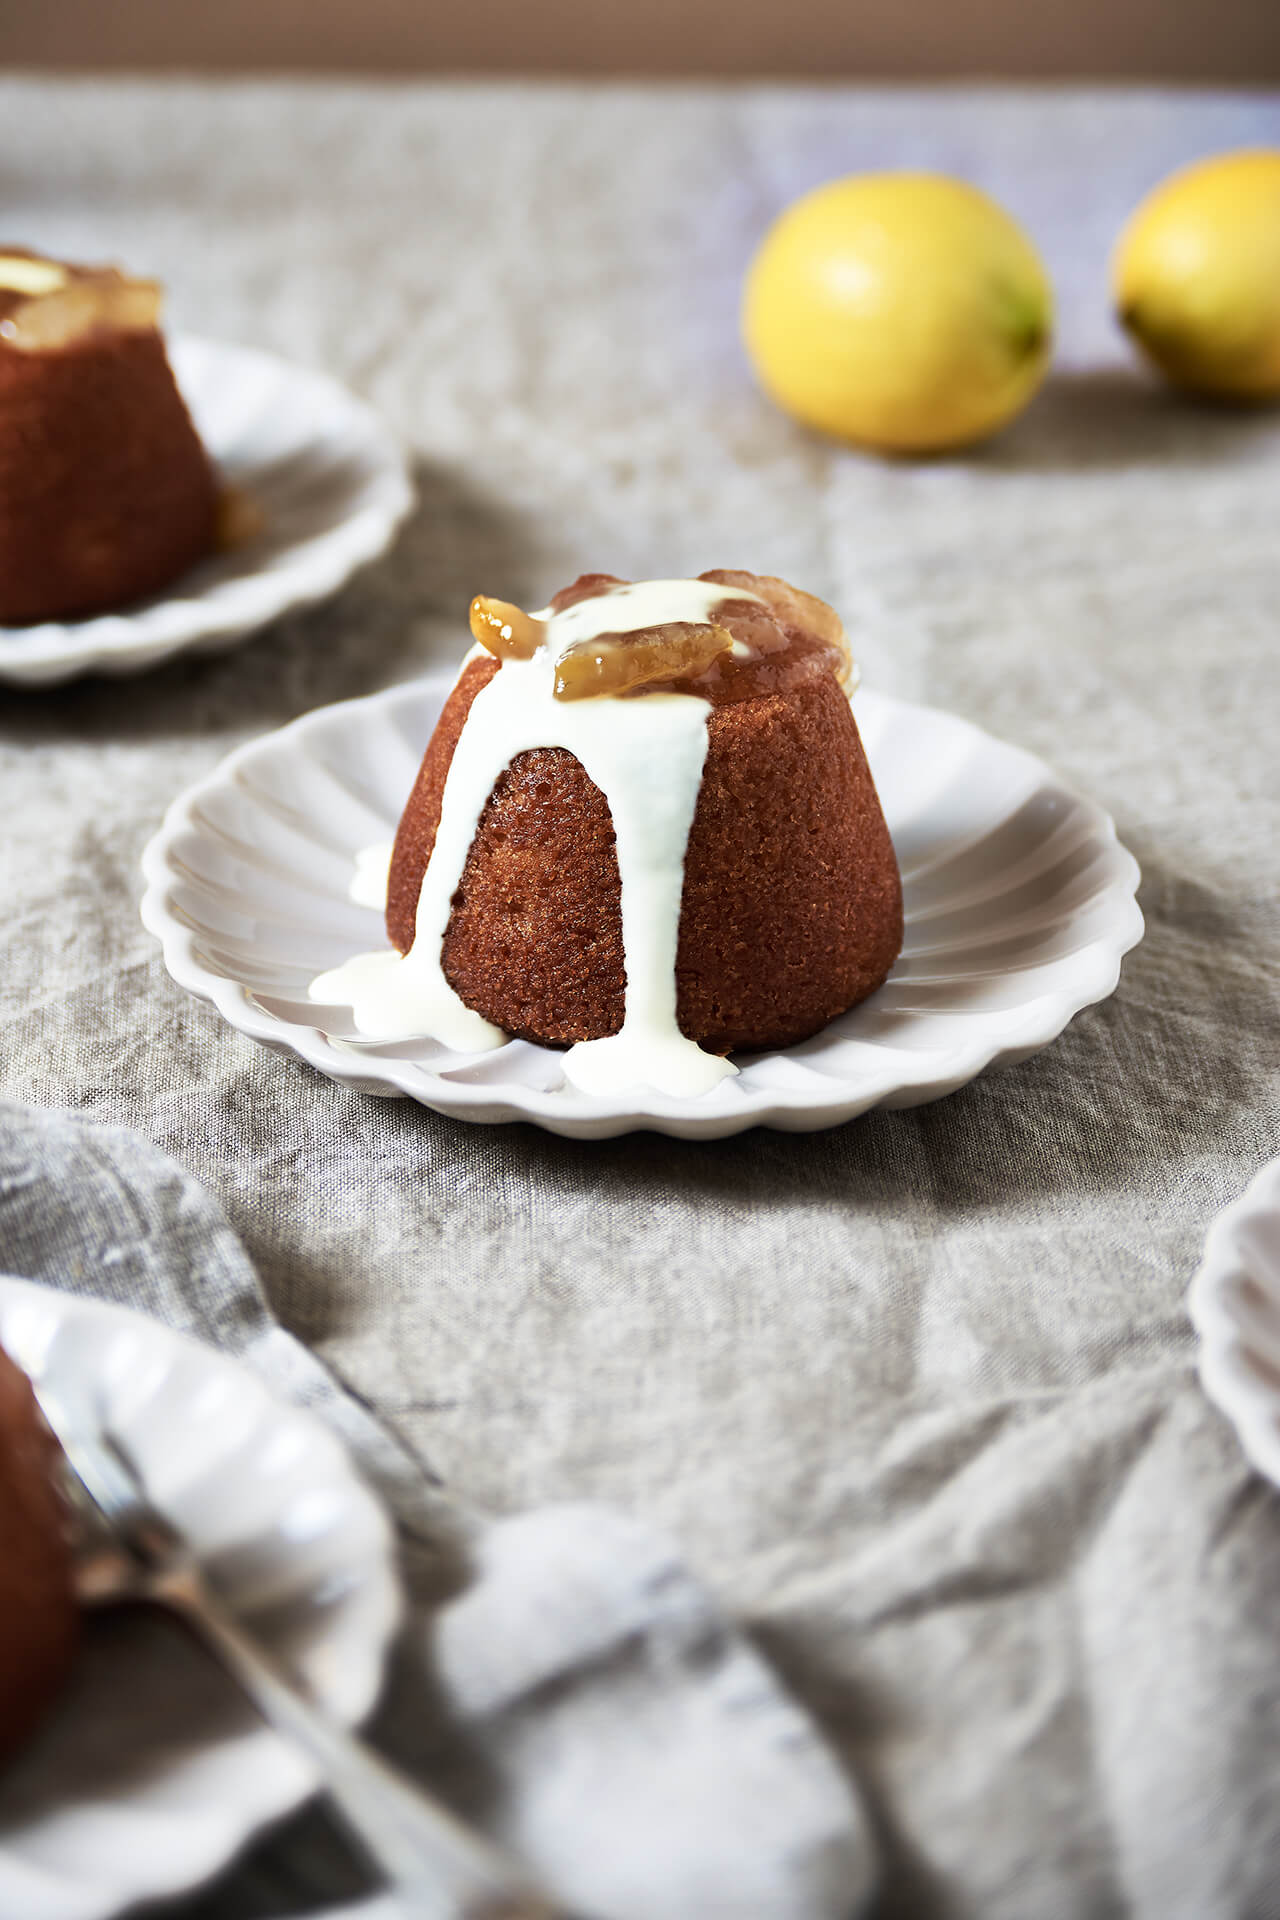 Recipe for Lemon puddings - perfect dessert for Easter